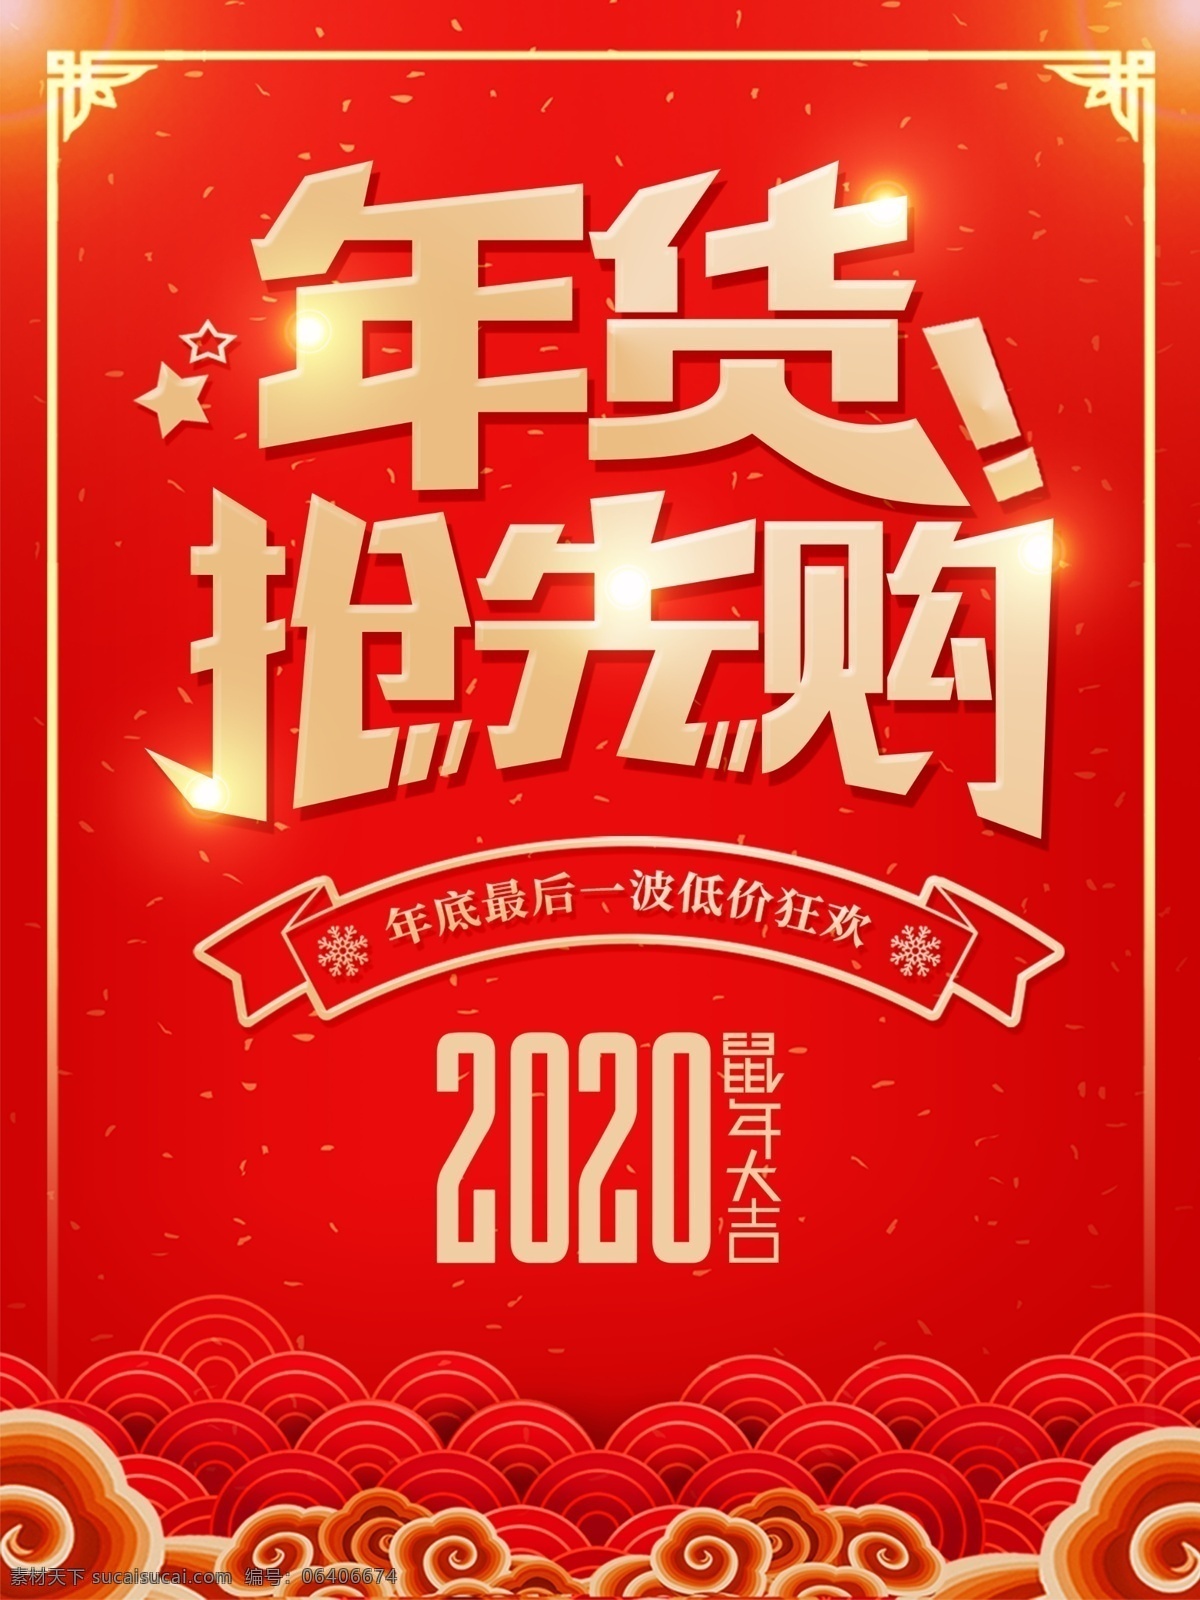 年货抢先购 鼠年 2020年 春节 过年 喜庆 传统节日 波纹 祥云 星点 星光 年货 优惠 促销 边框 海报 低价狂欢 活动